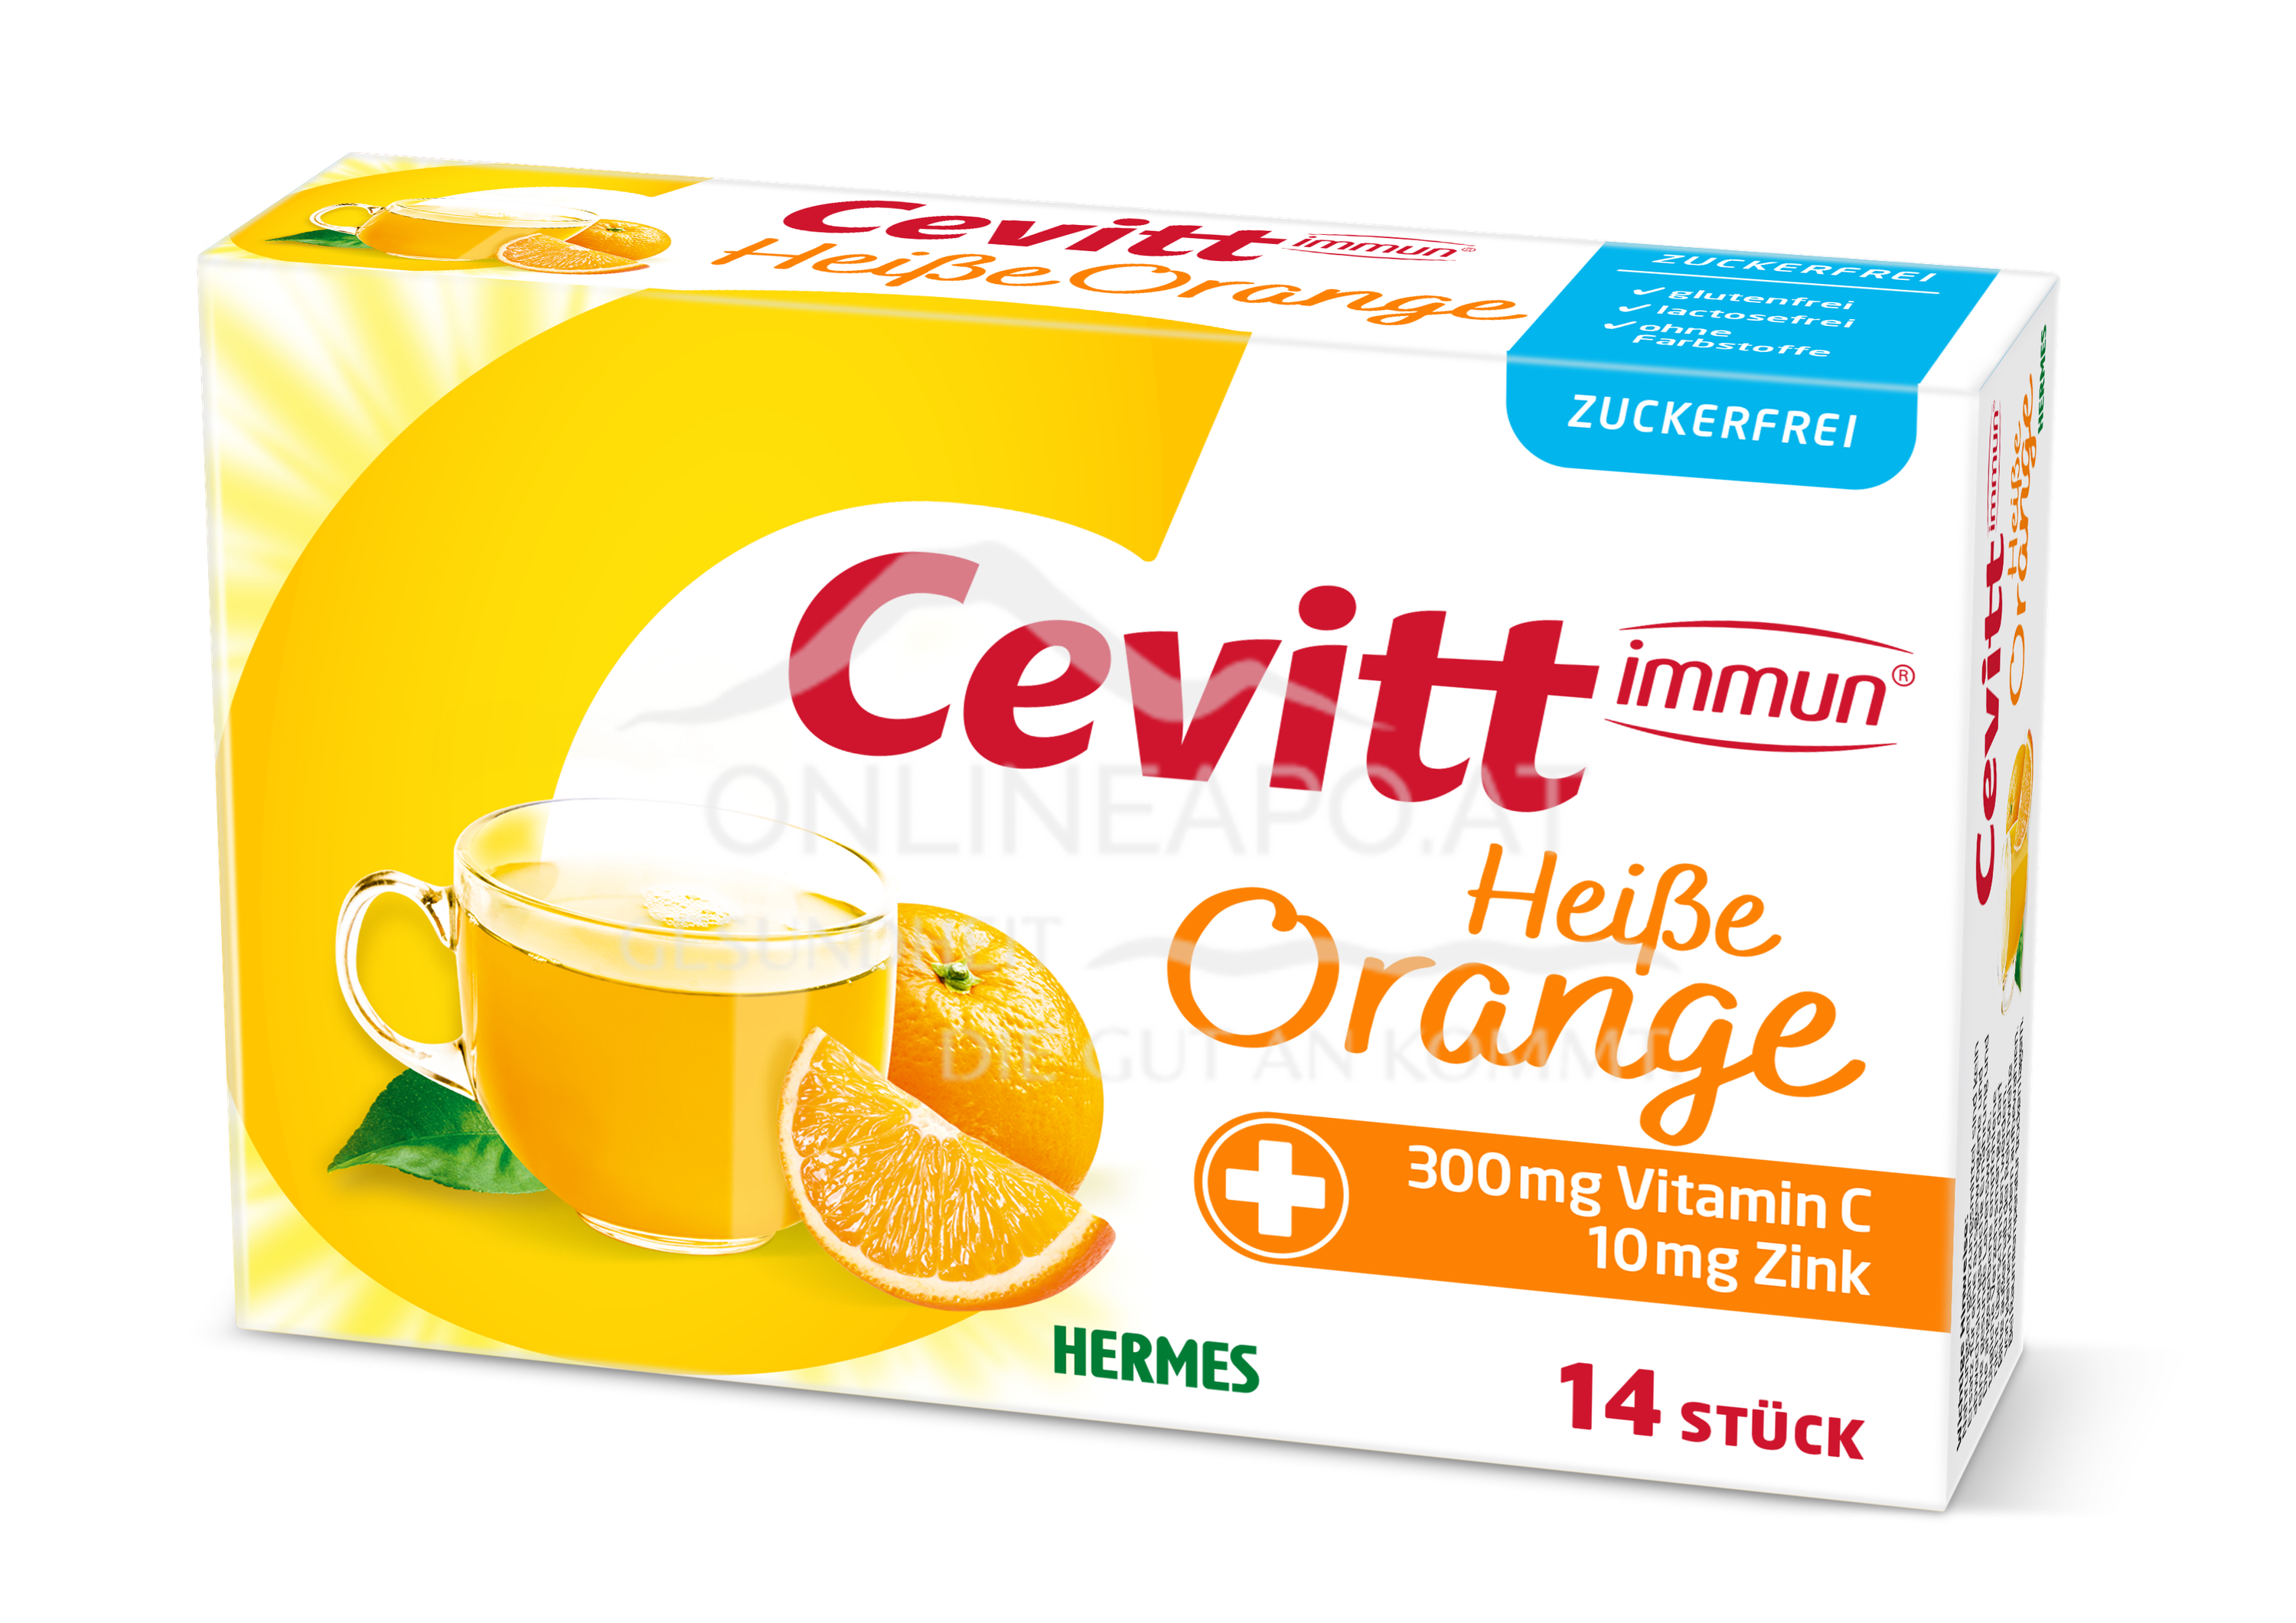 Cevitt immun® Heiße Orange zuckerfrei